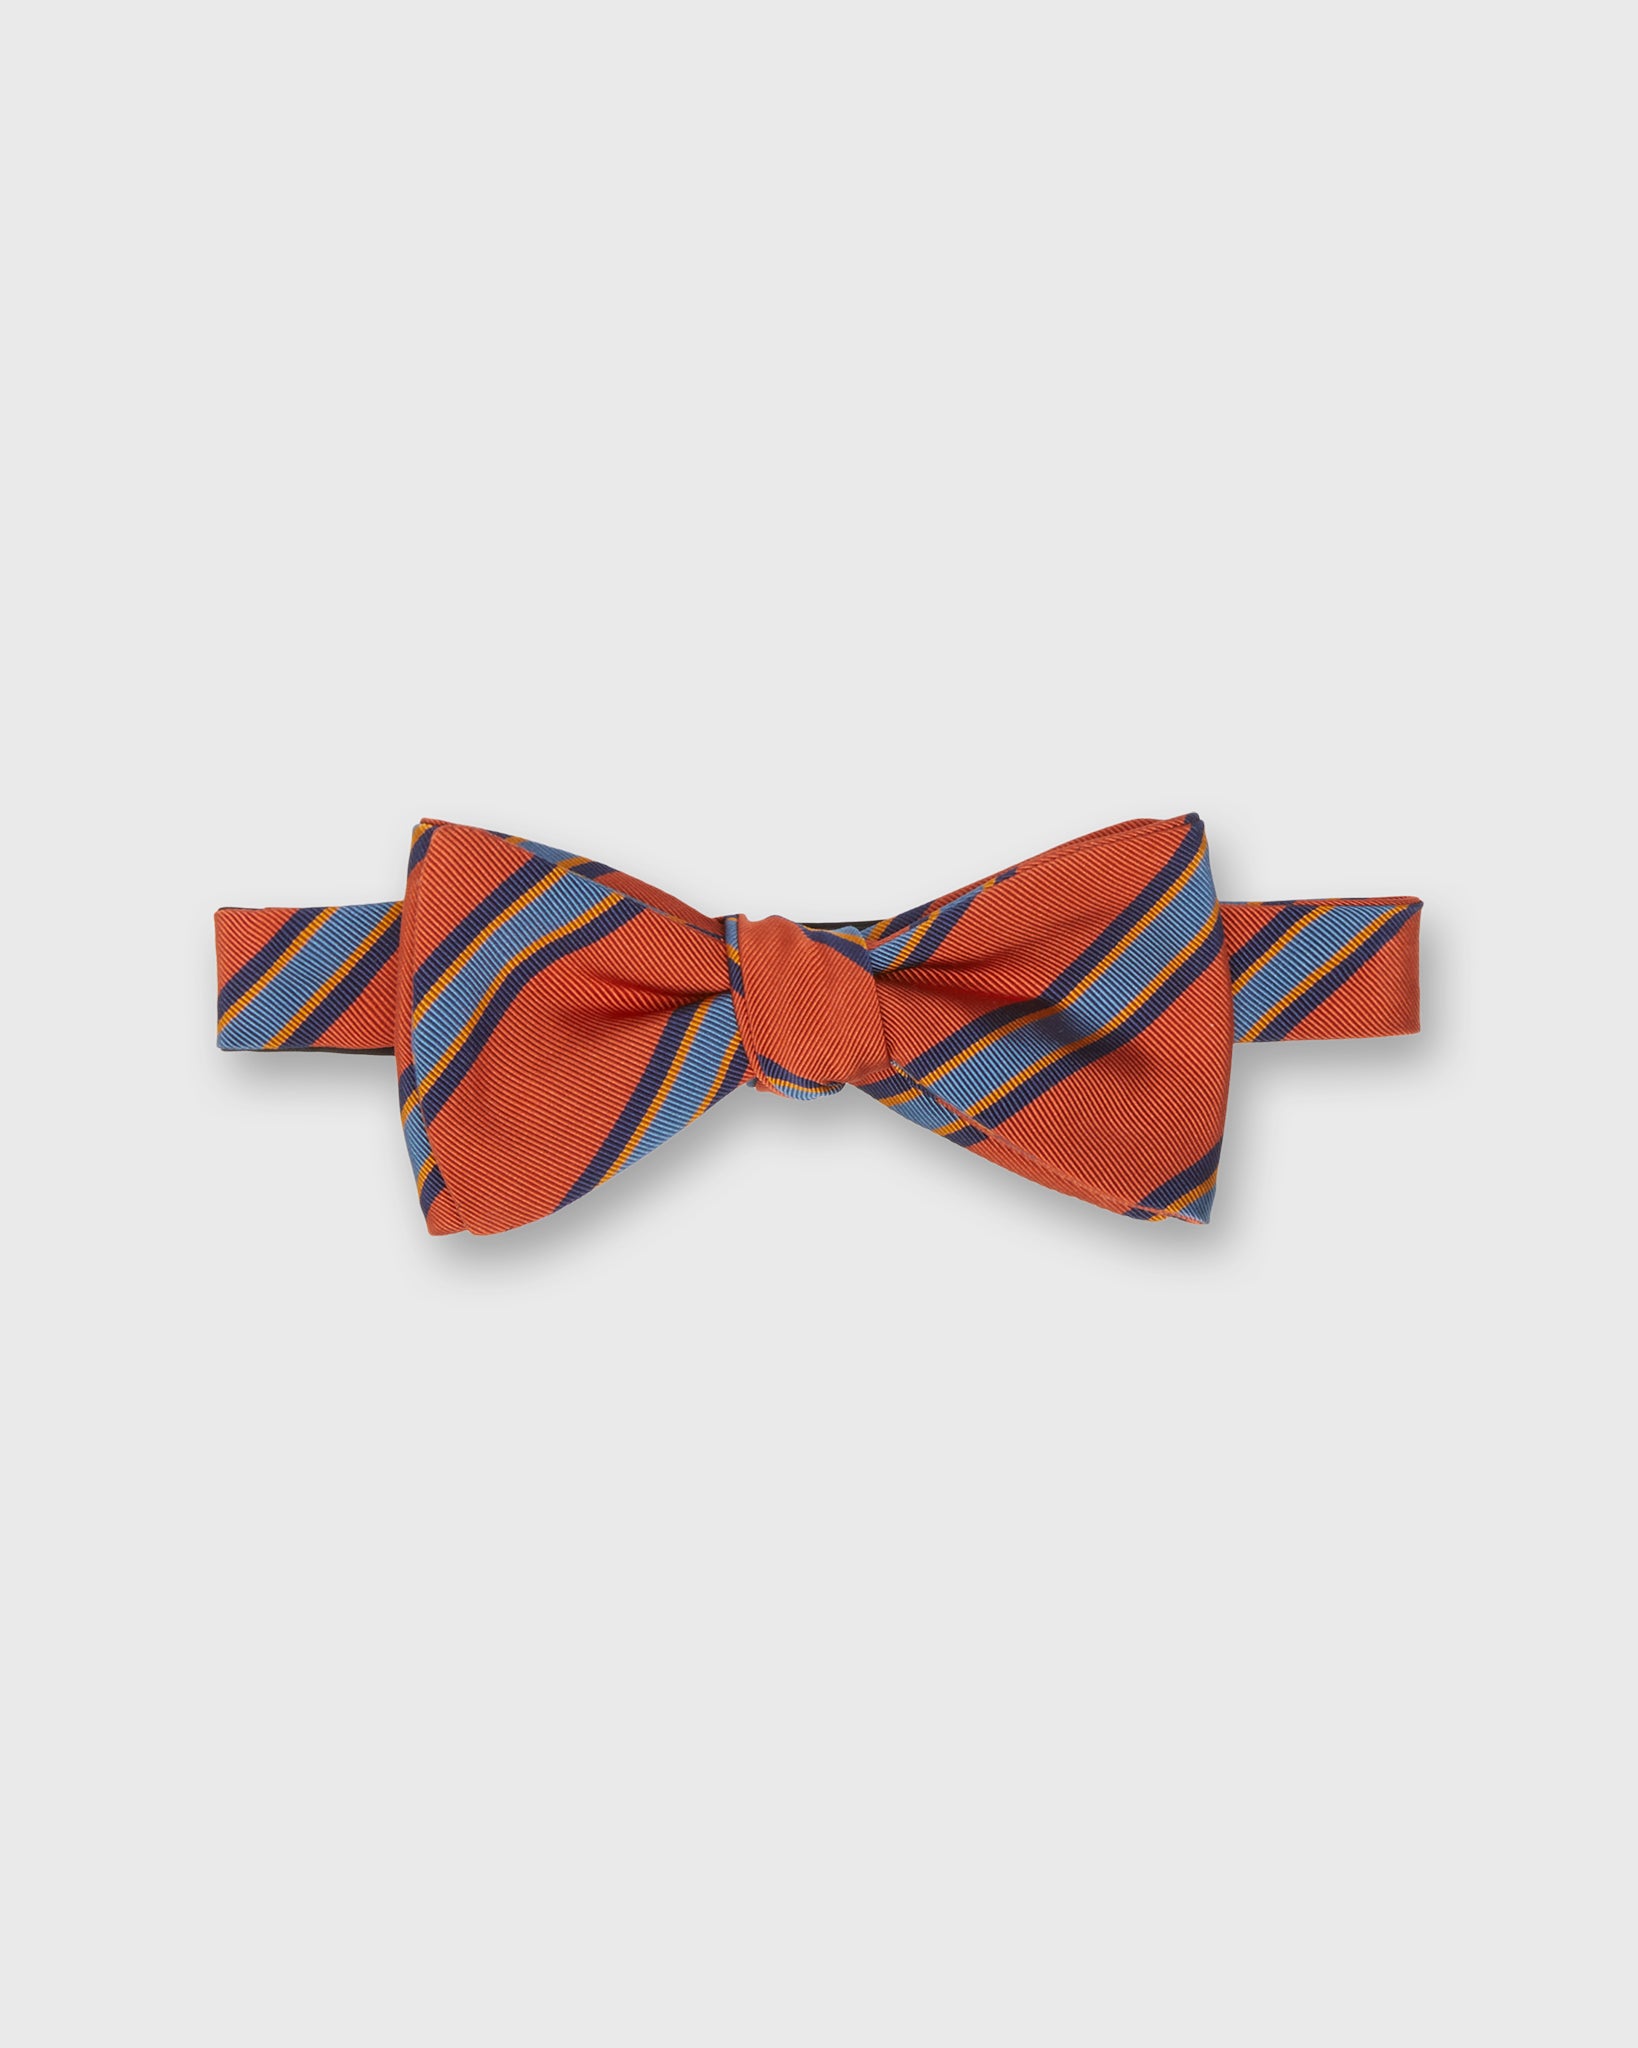 Silk Bow Tie in Orange/Blue/Navy/Gold Stripe